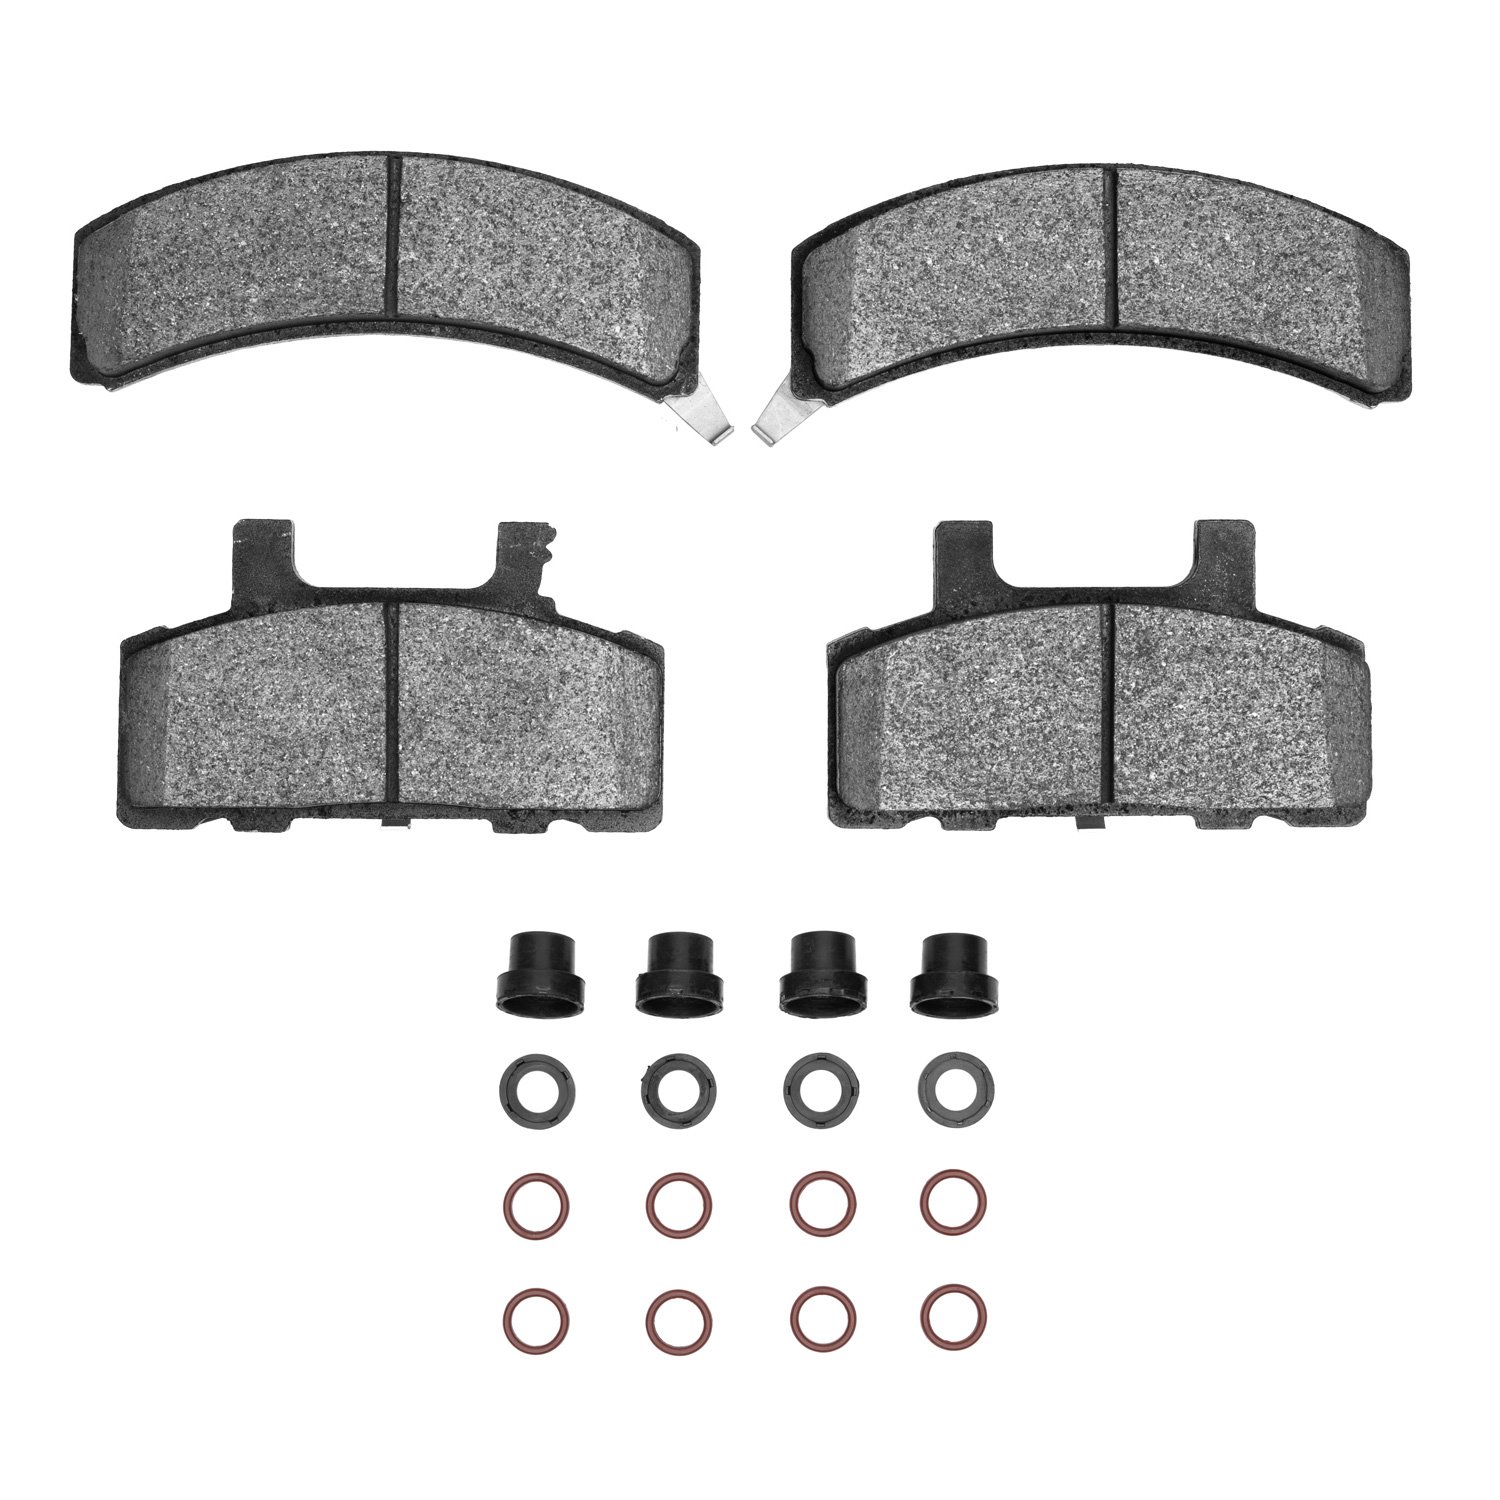 1310-0368-01 3000-Series Ceramic Brake Pads & Hardware Kit, 1988-1991 GM, Position: Front